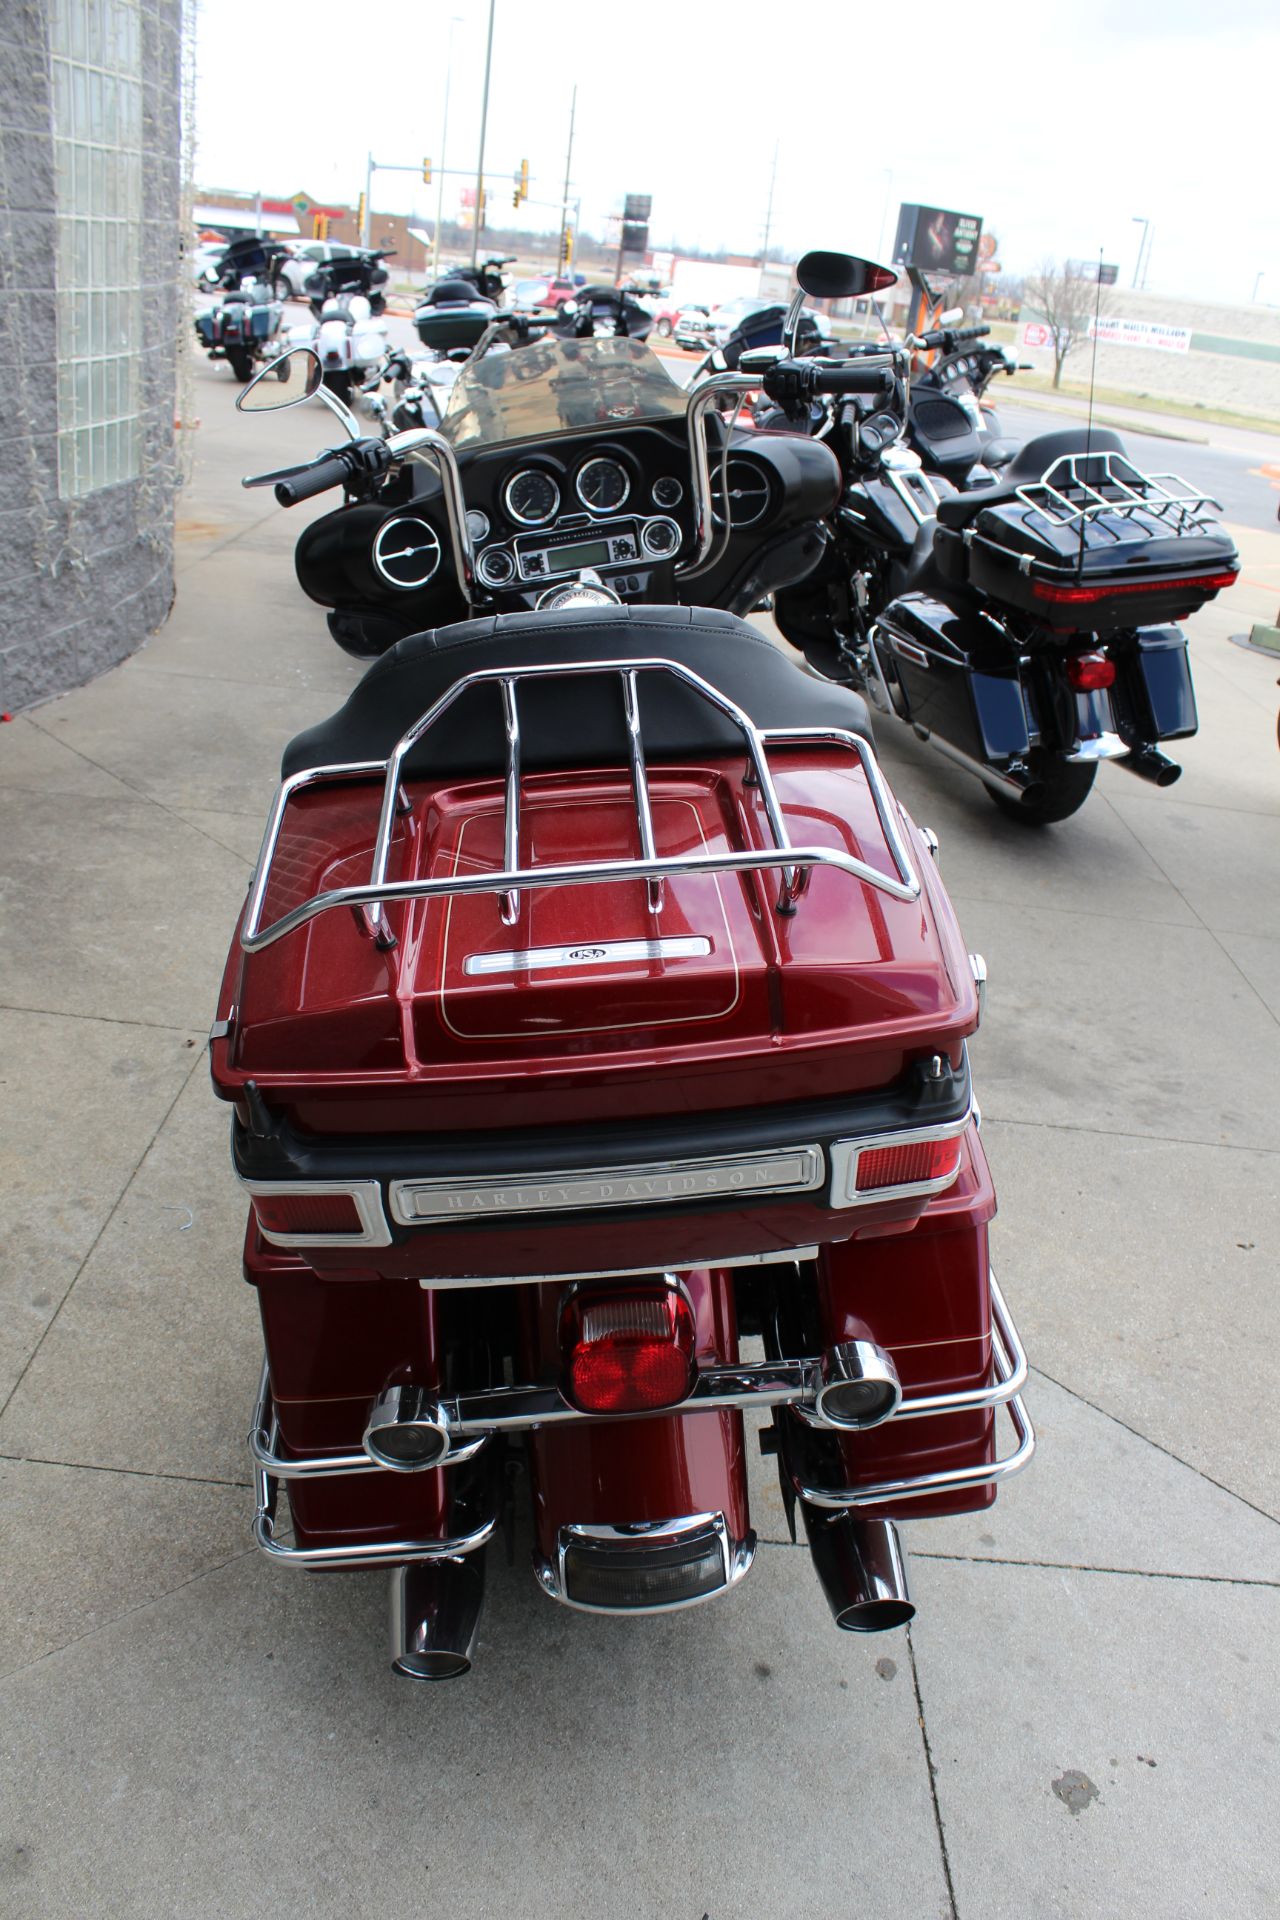 2009 Harley-Davidson FLHTCU in Marion, Illinois - Photo 5